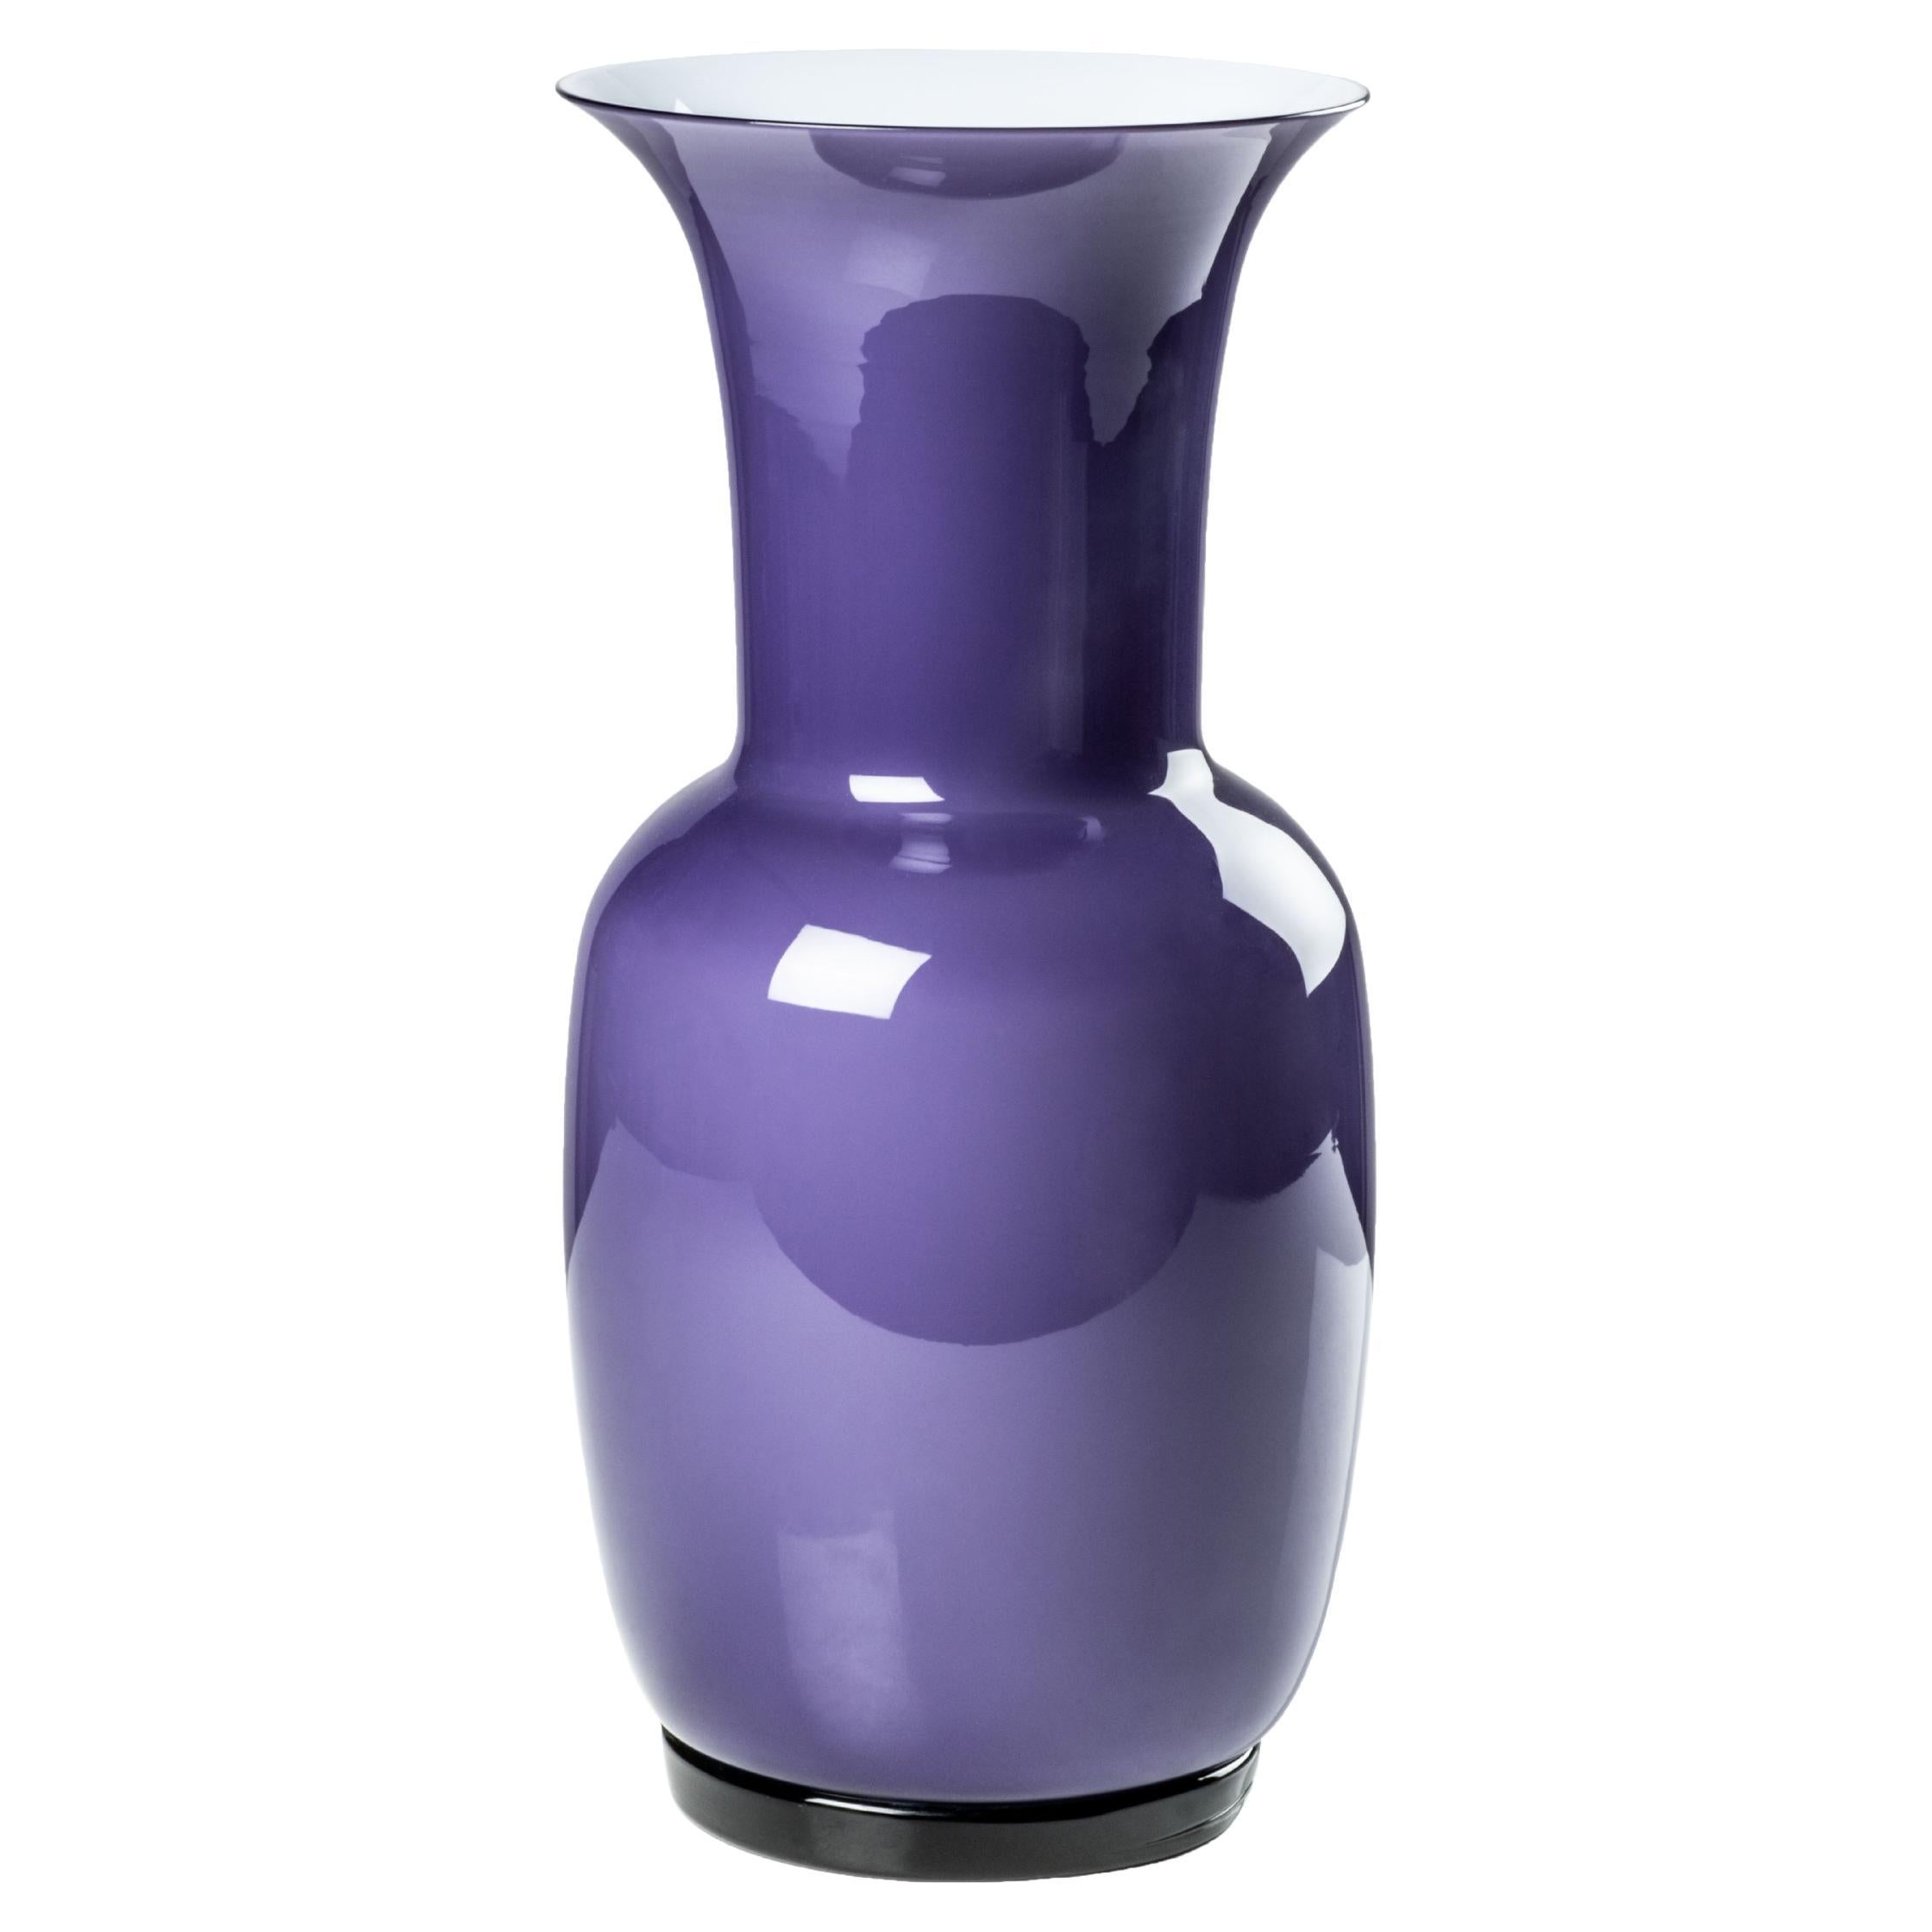 Venini Opalino Small Vase in Indigo Milk White Inside Murano Glass